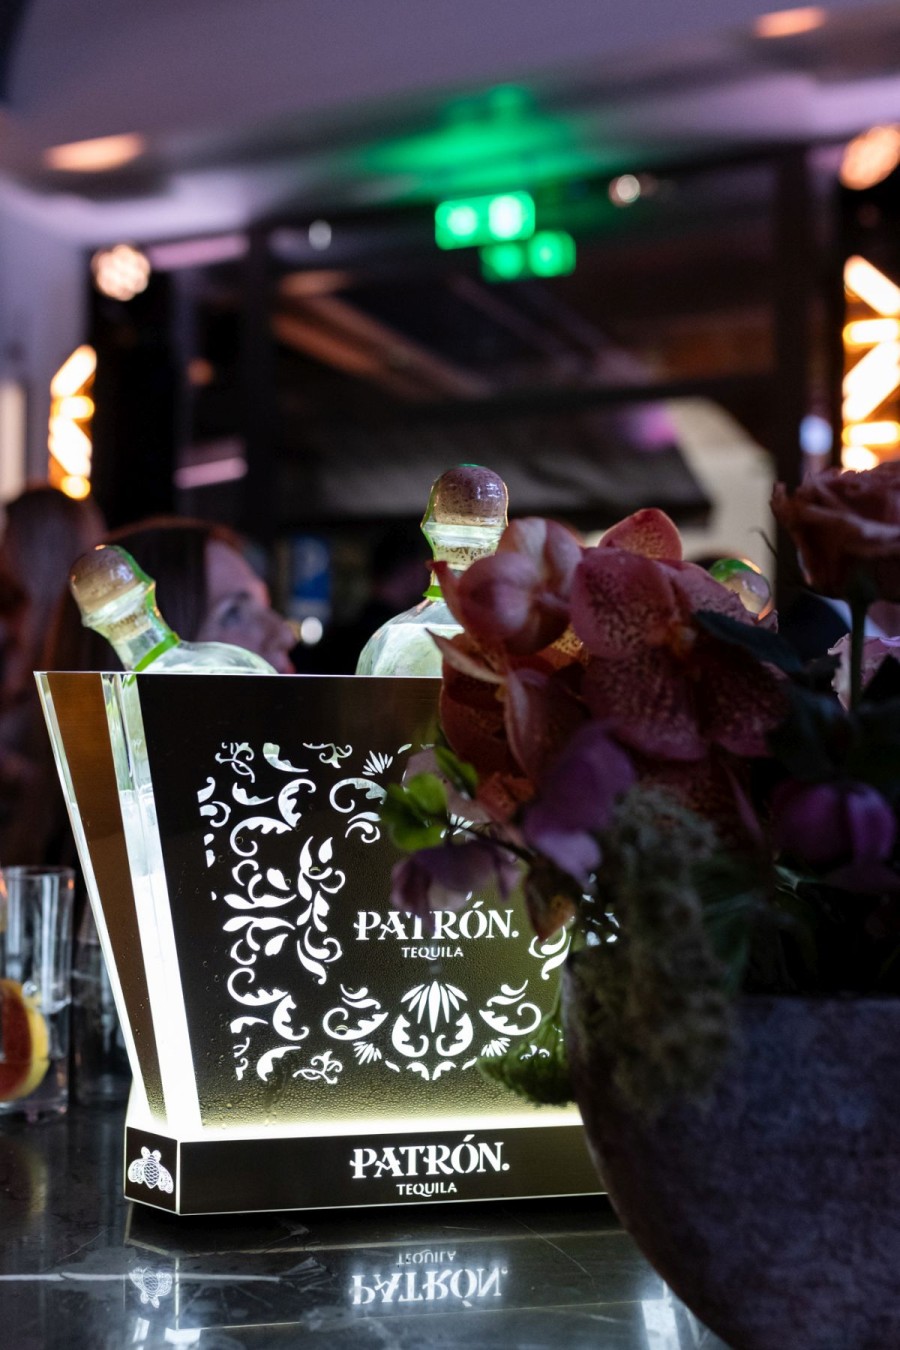 Το GLOW 200 Anniversary cocktail party x Patrón super premium tequila έγινε το απόλυτο talk of the town της Θεσσαλονίκης και επισφραγίστηκε με τη λαμπερή παρουσία του Νίκου Αλιάγα - Φωτογραφία 24